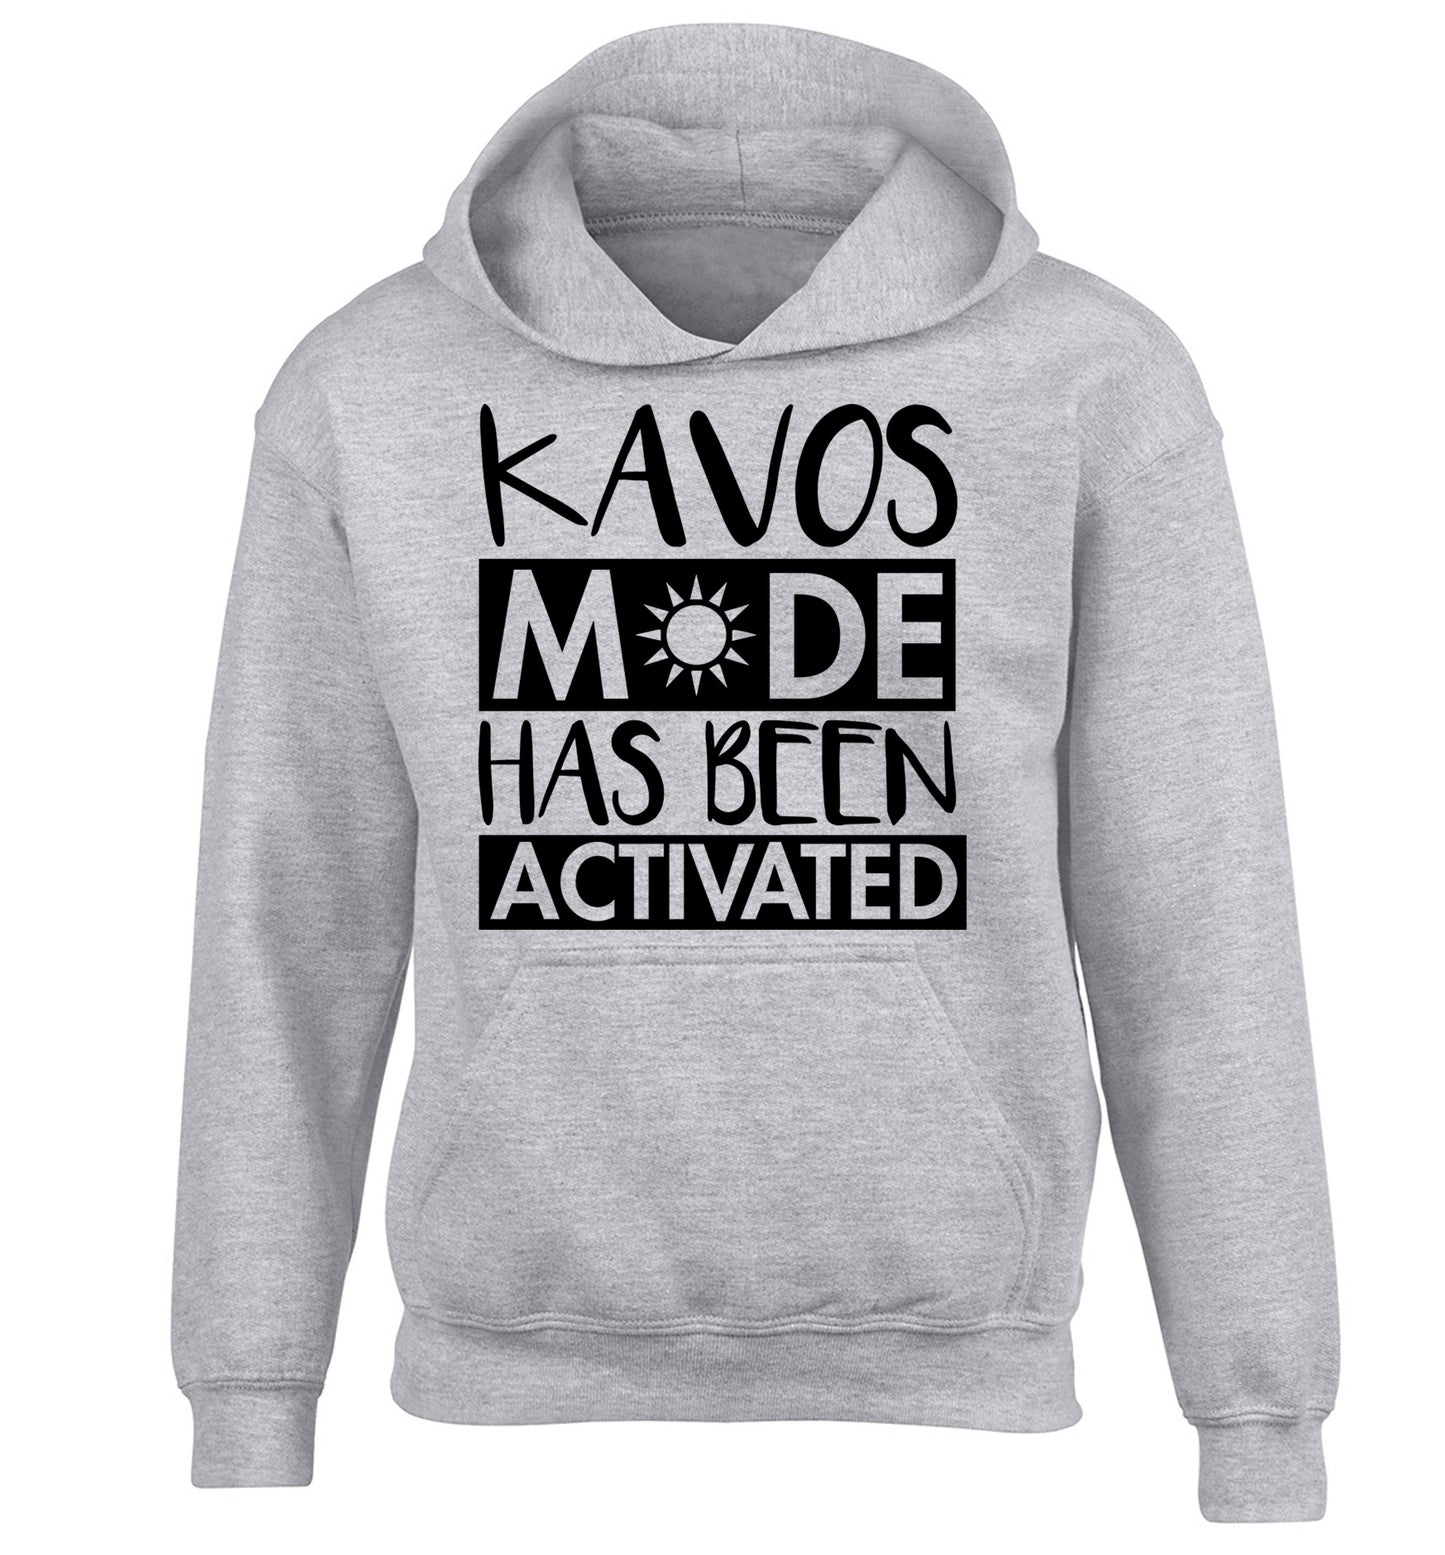 Kavos mode has been activated children's grey hoodie 12-14 Years